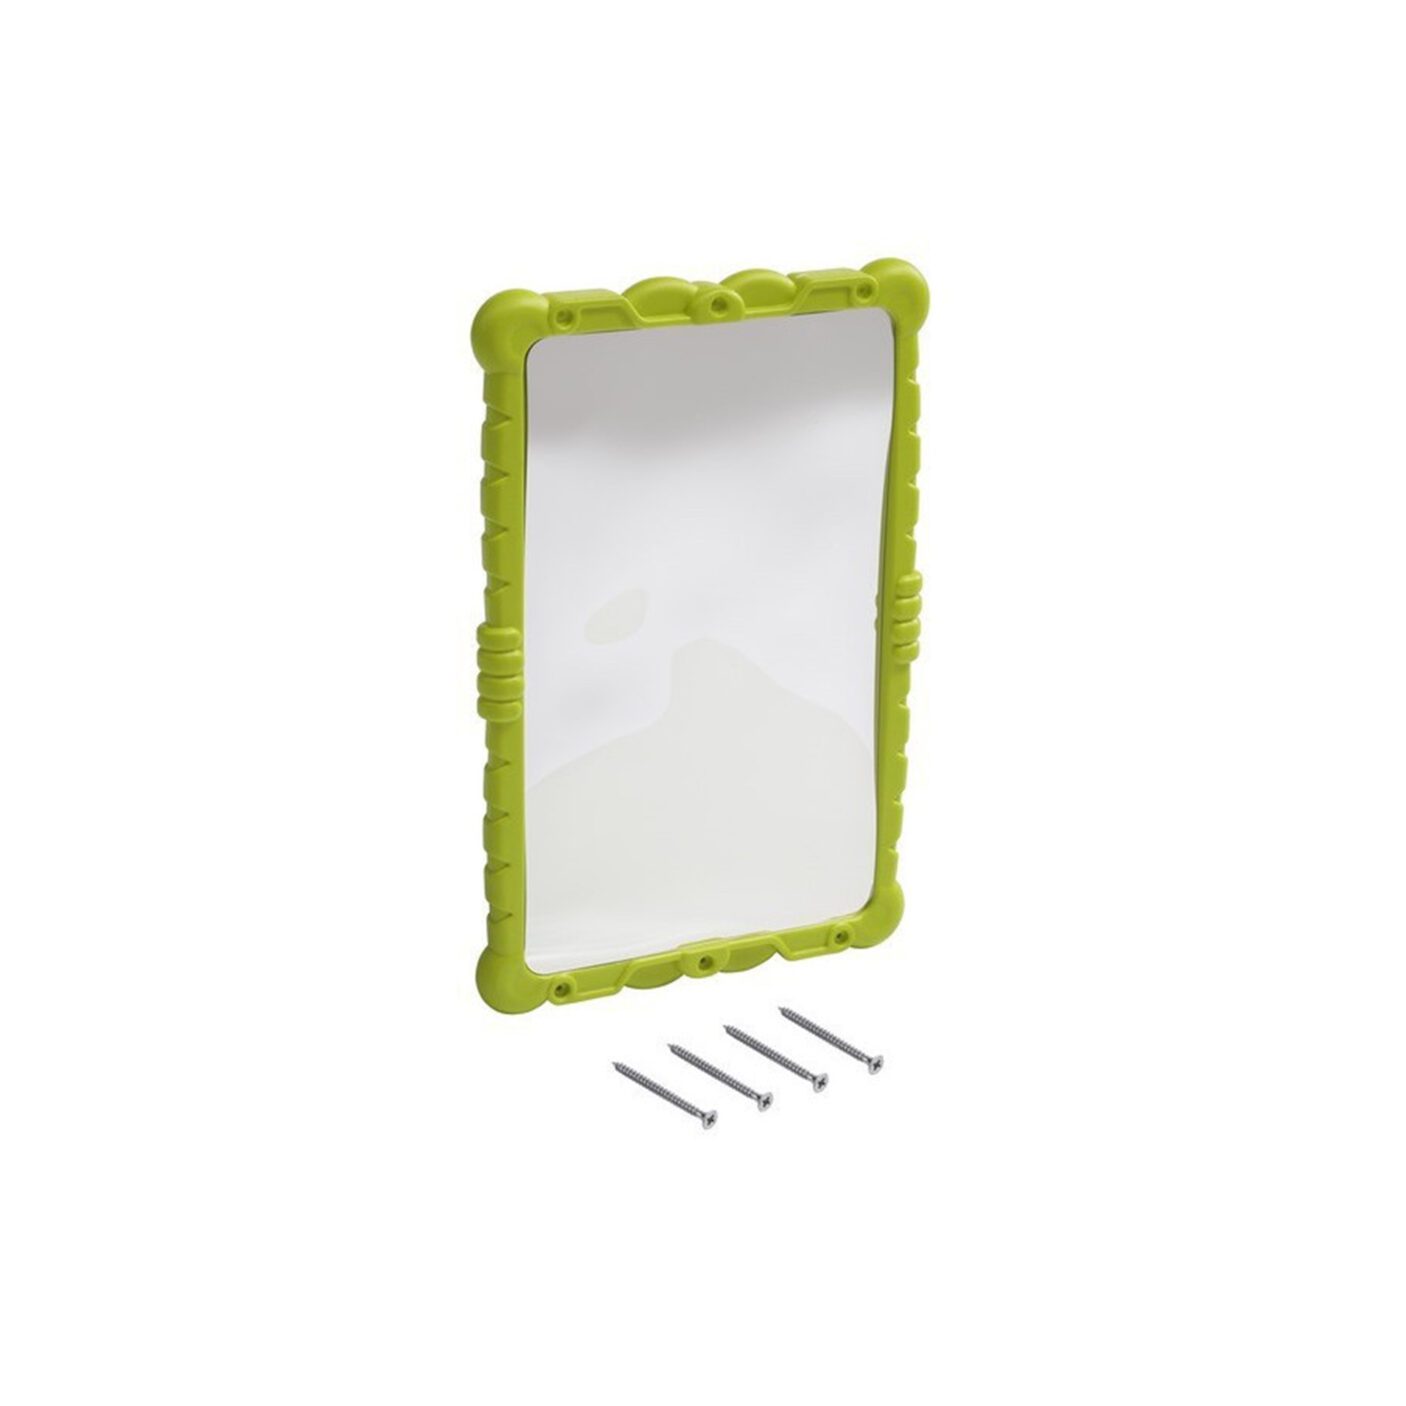 Žaidimų veidrodis „Juokutis“, žalias